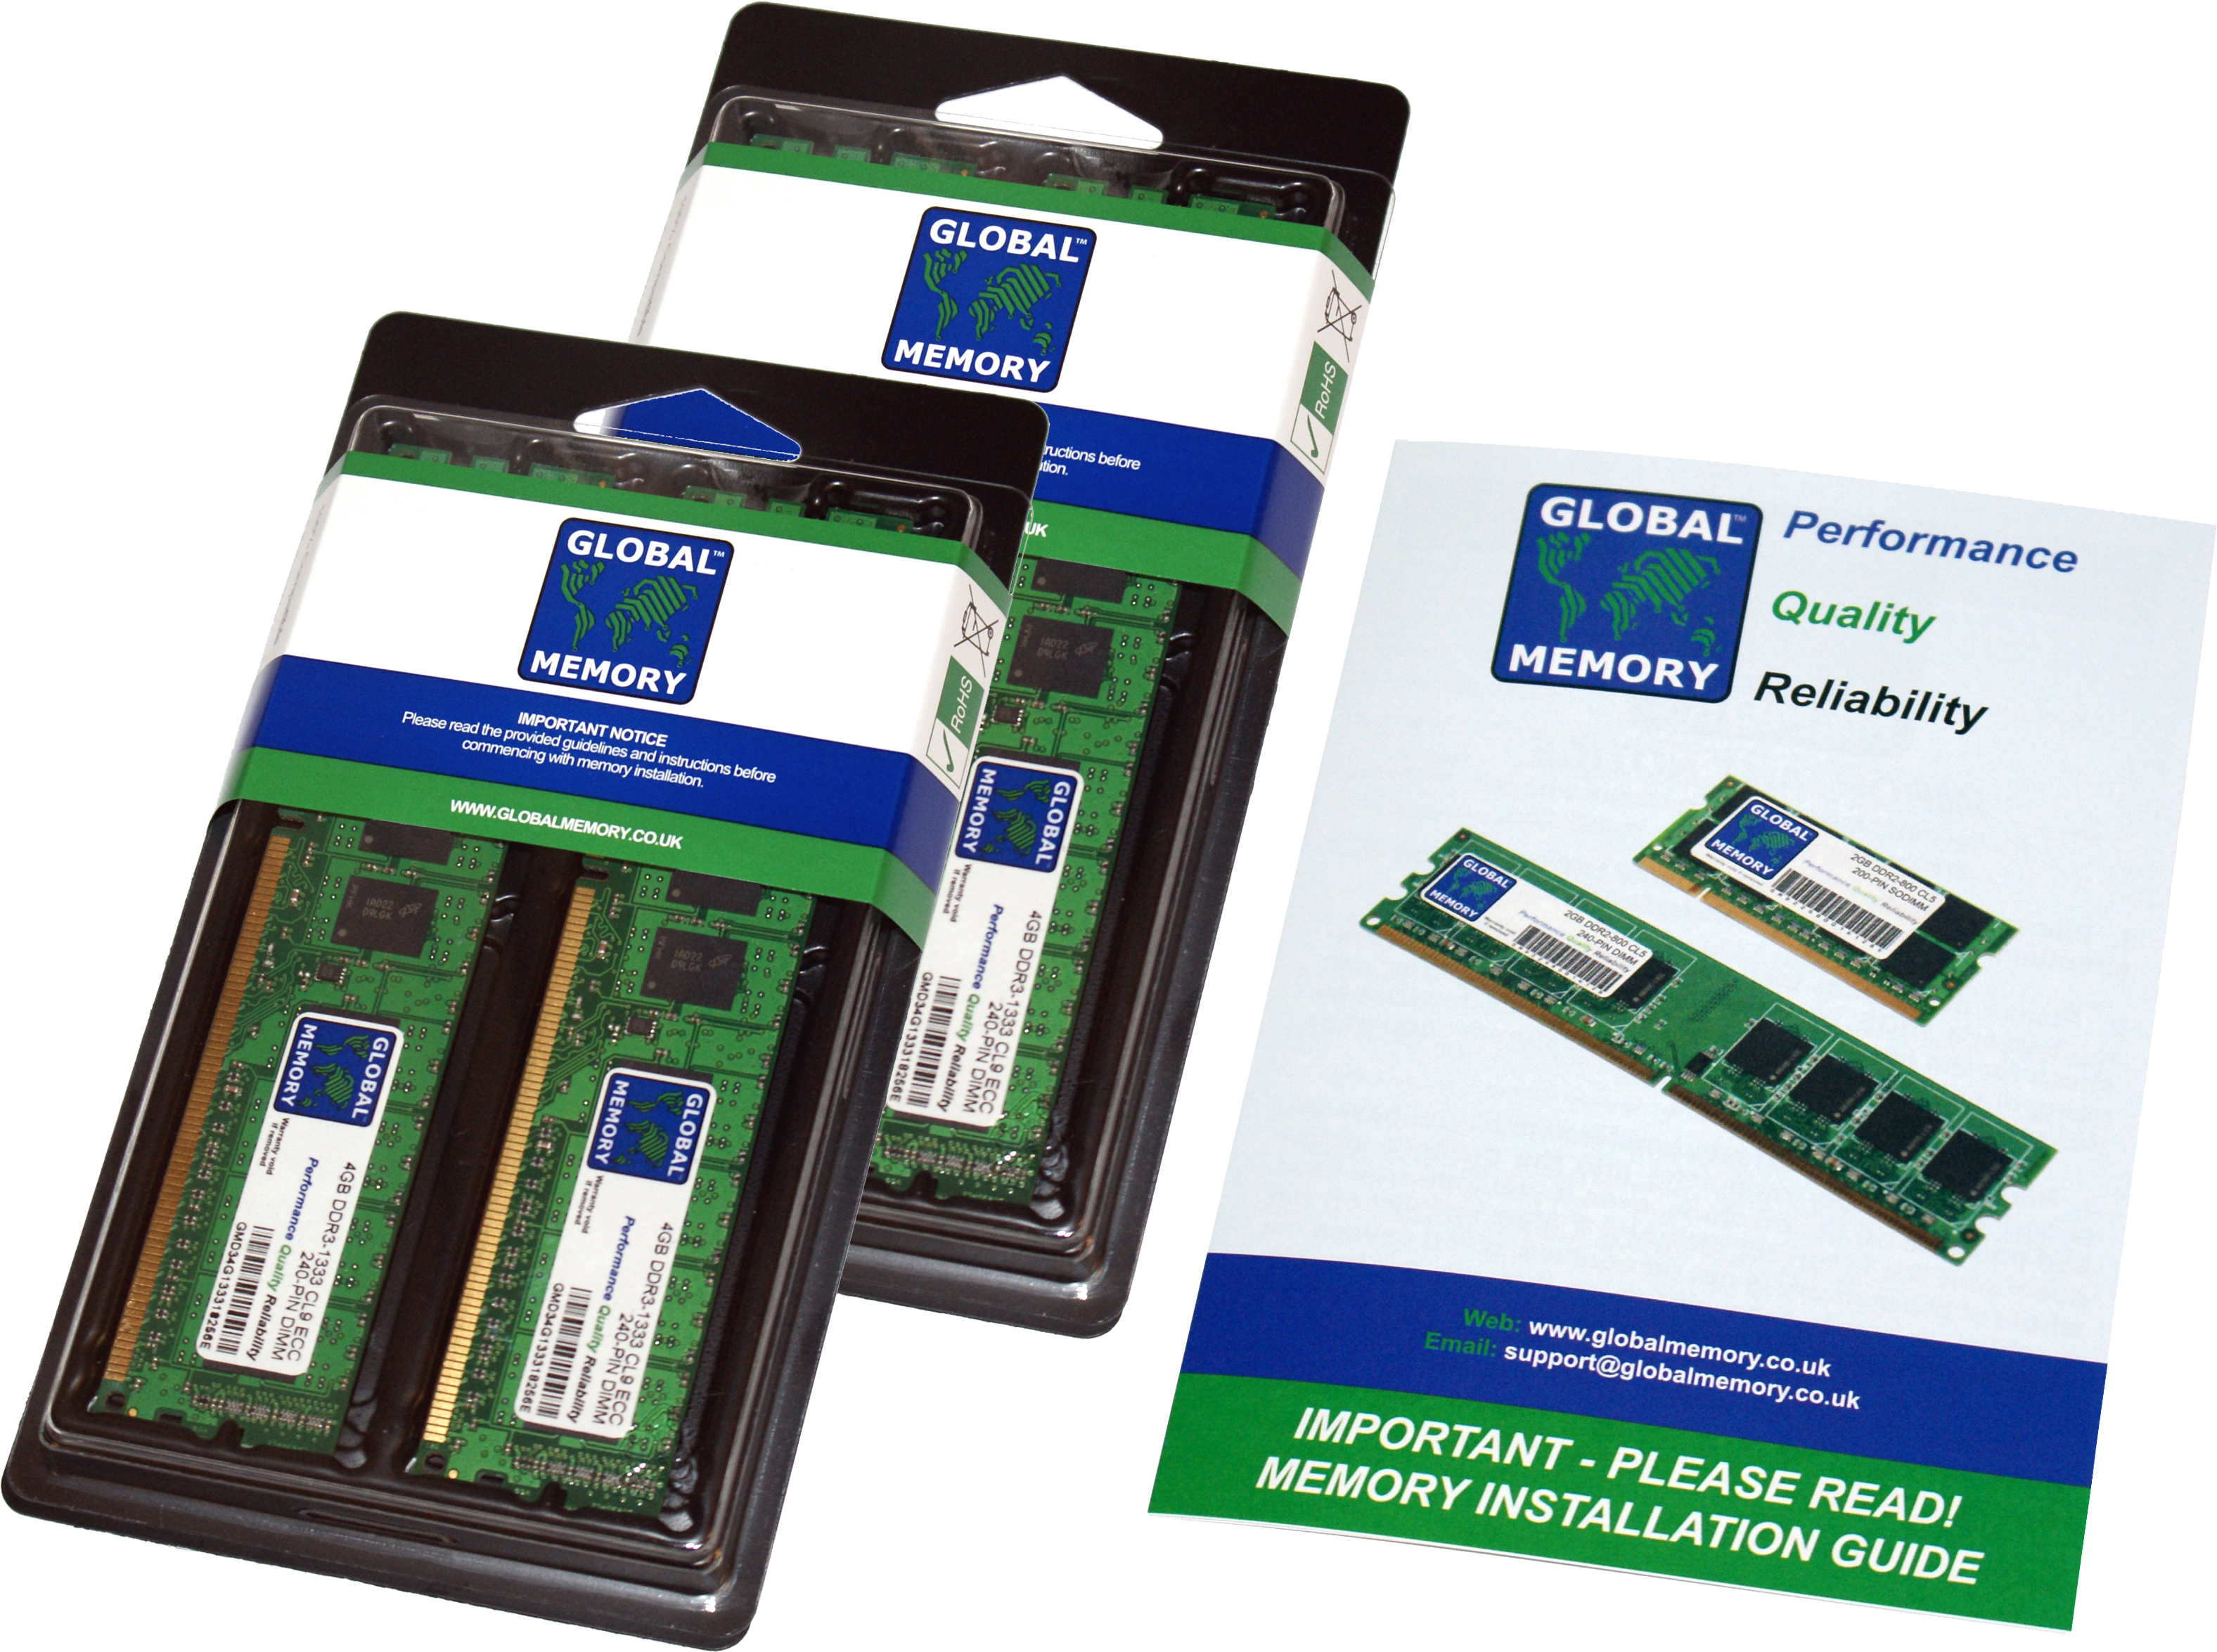 32GB (4 x 8GB) DDR4 2400MHz PC4-19200 288-PIN ECC DIMM (UDIMM) MEMORY RAM KIT FOR HEWLETT-PACKARD SERVERS/WORKSTATIONS